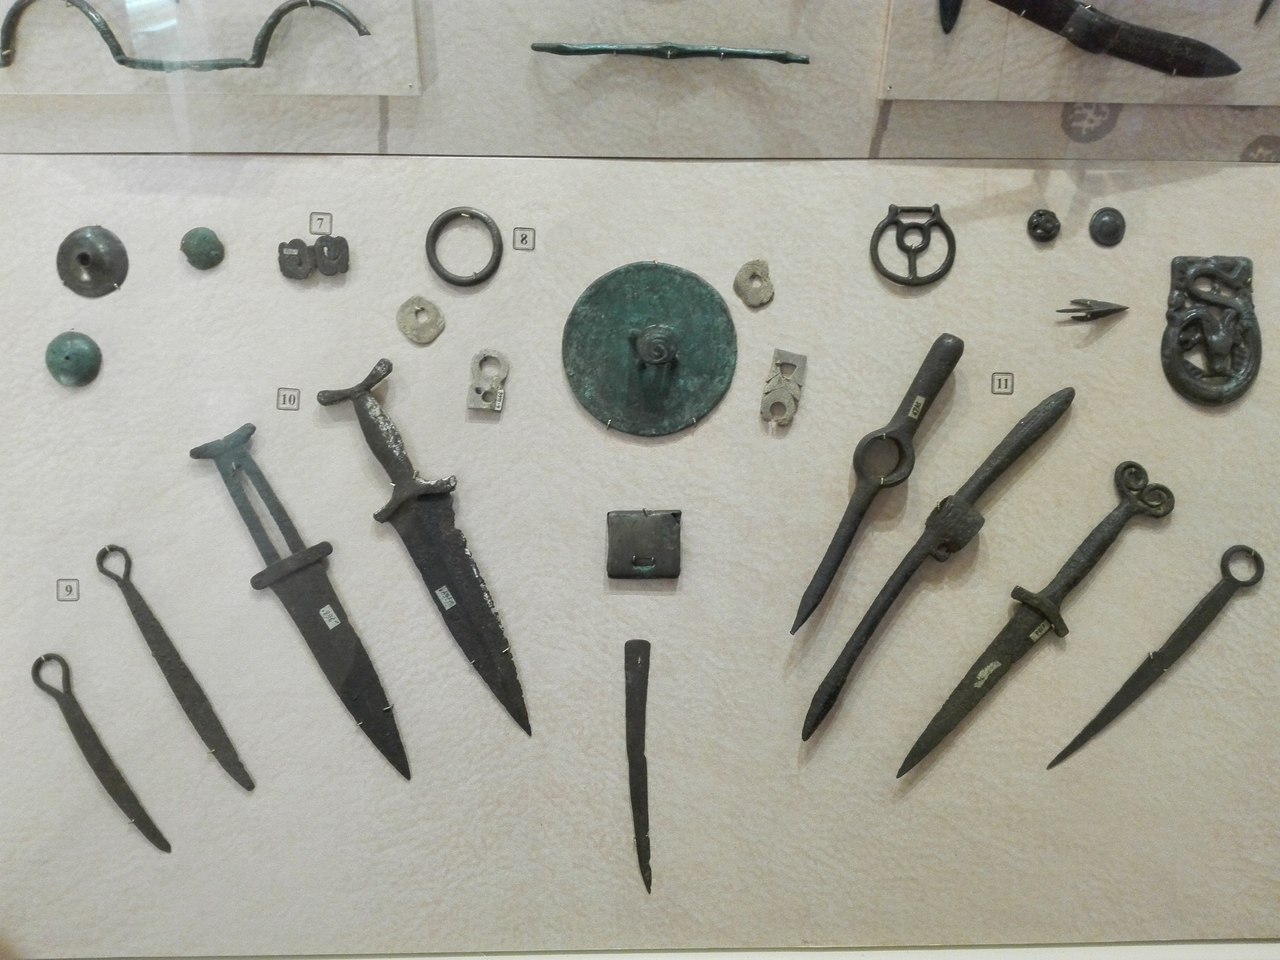 Древние сибирские хирурги оперировали совершенными инструментами